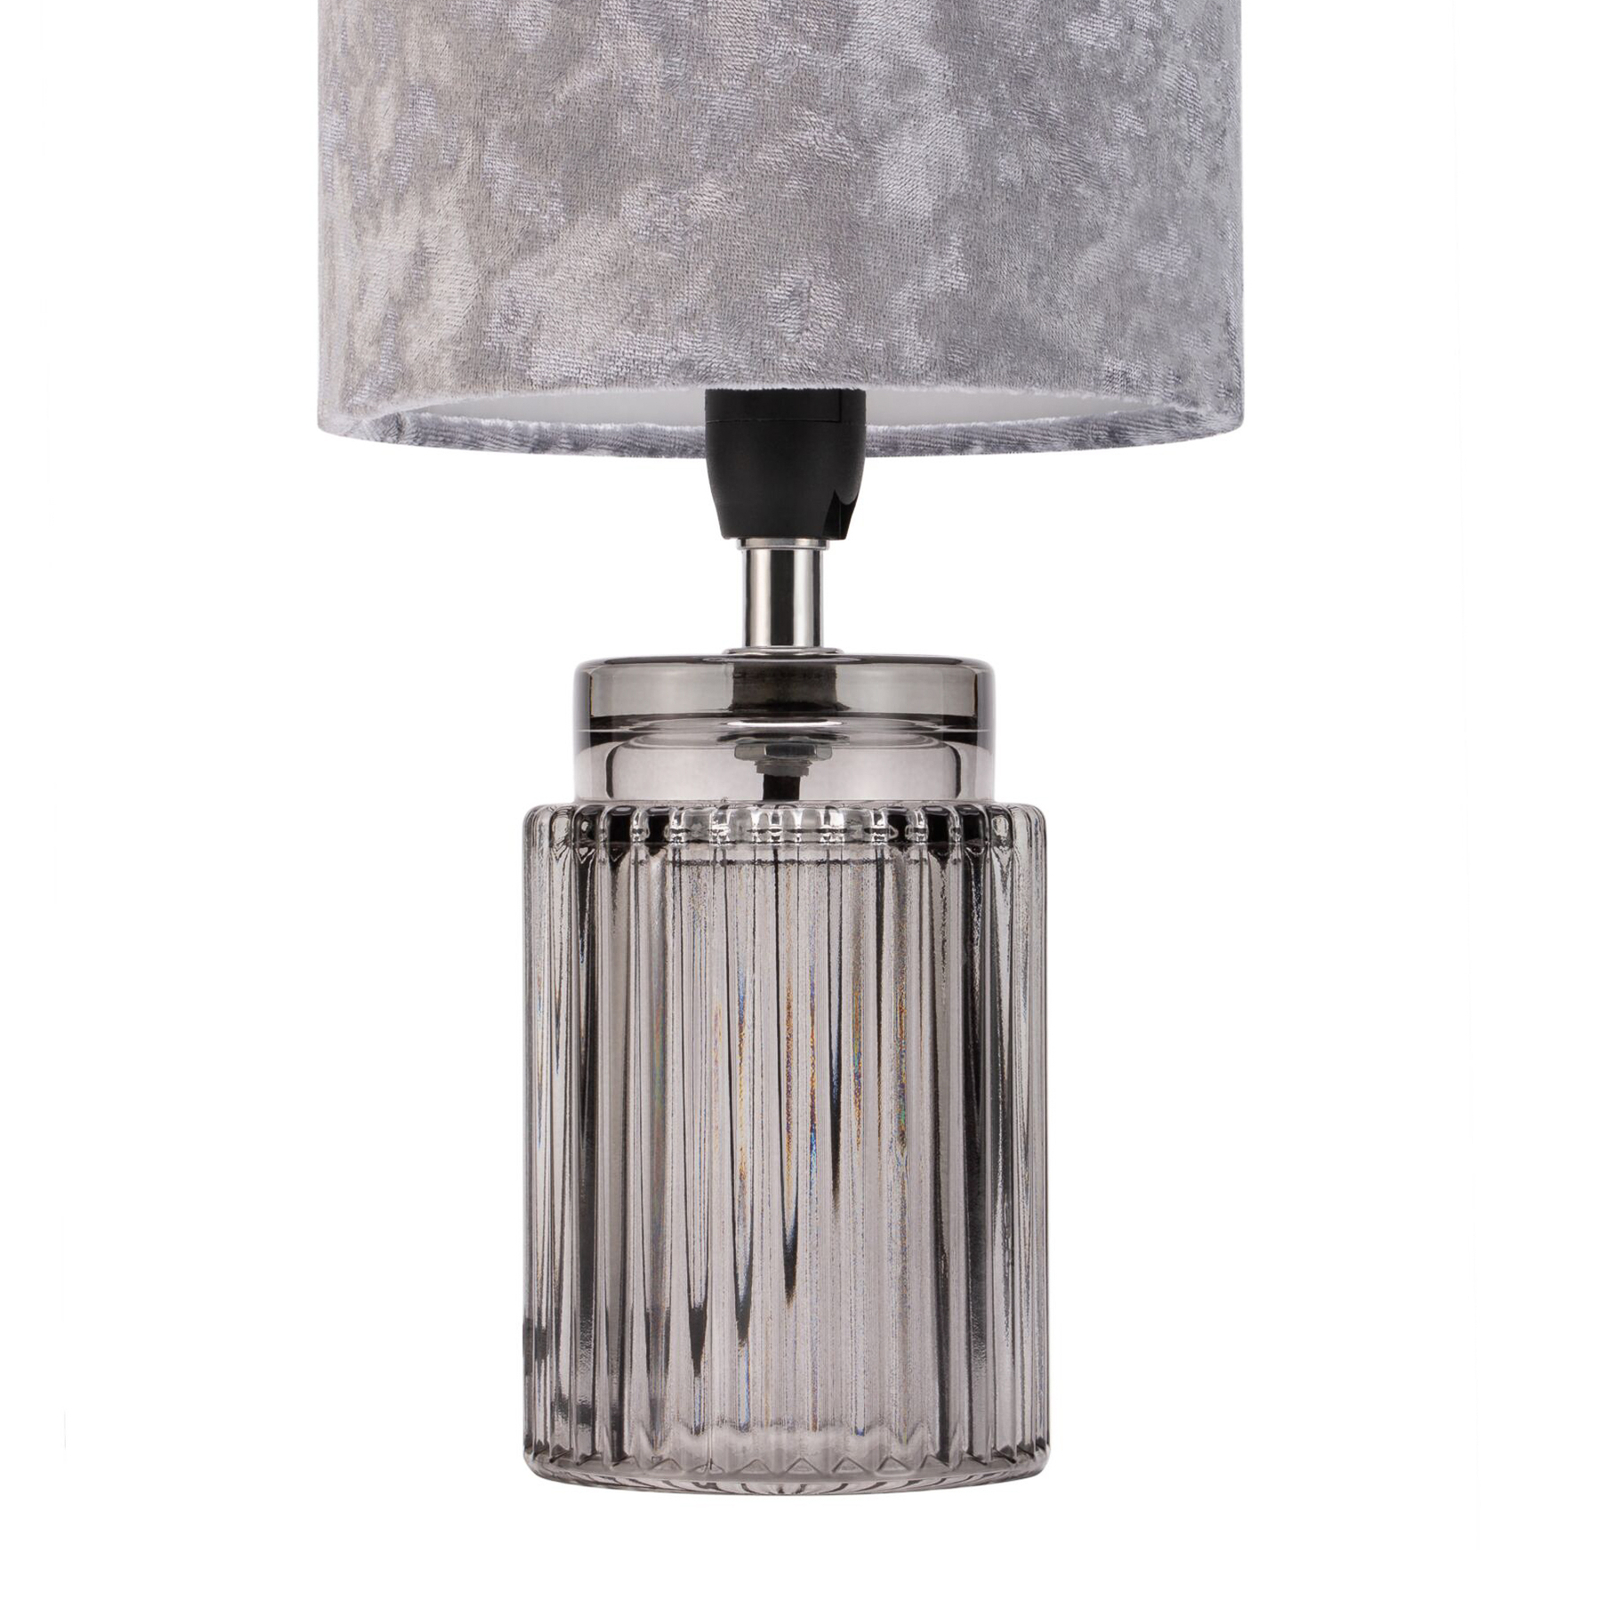 Pauleen Classy Velvet bordslampa med sammetsskärm